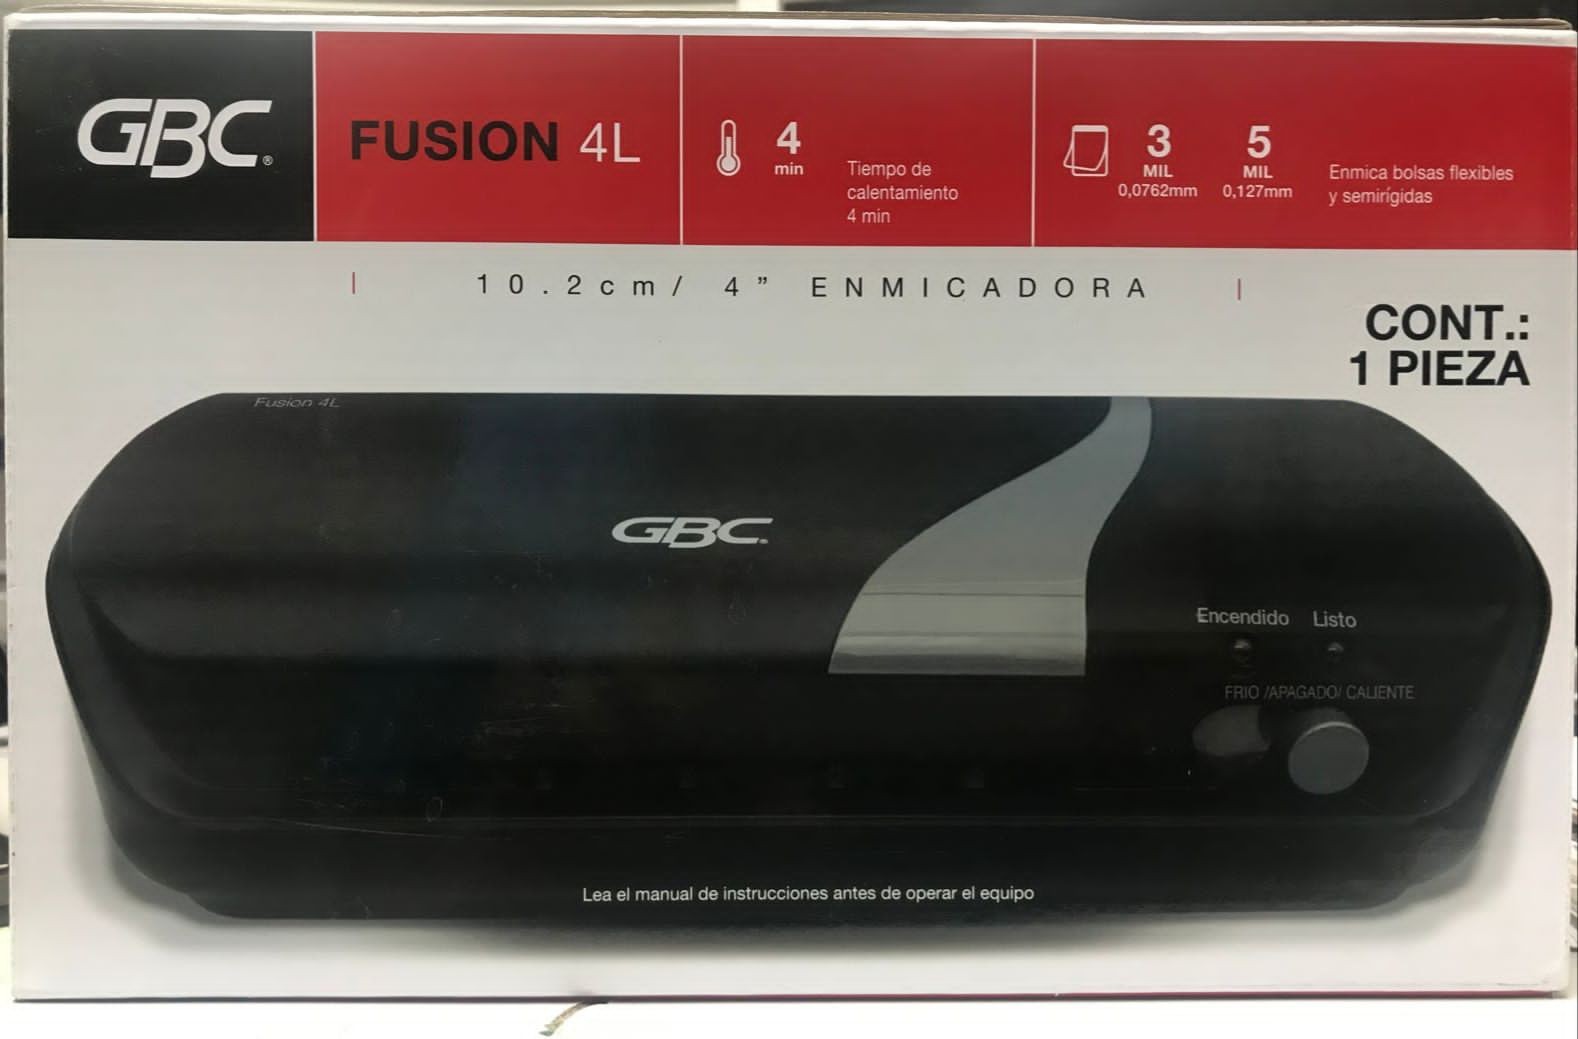 impresoras y scanners - Plastificadora .Laminadora de Carnet GBC Fusion 4L
P6664 1